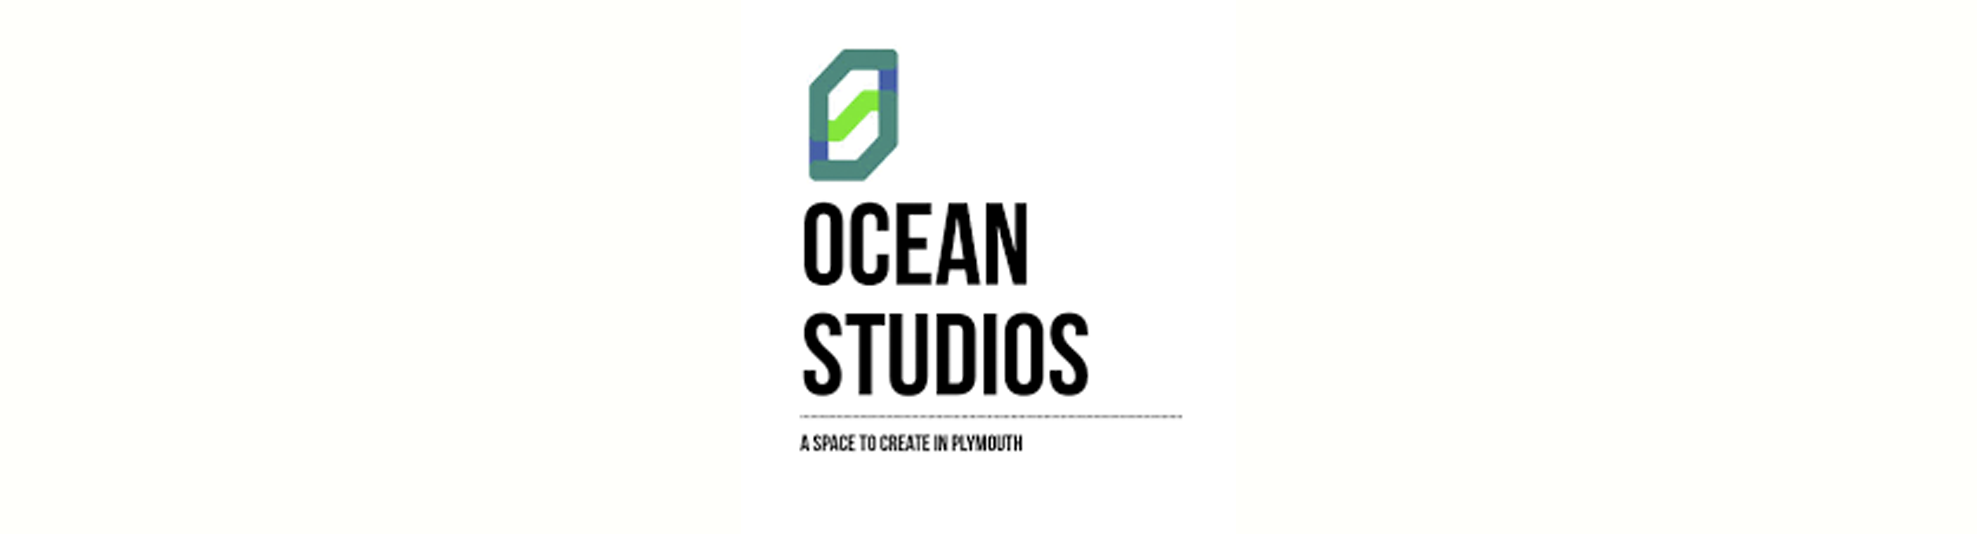 OceanStudios.png